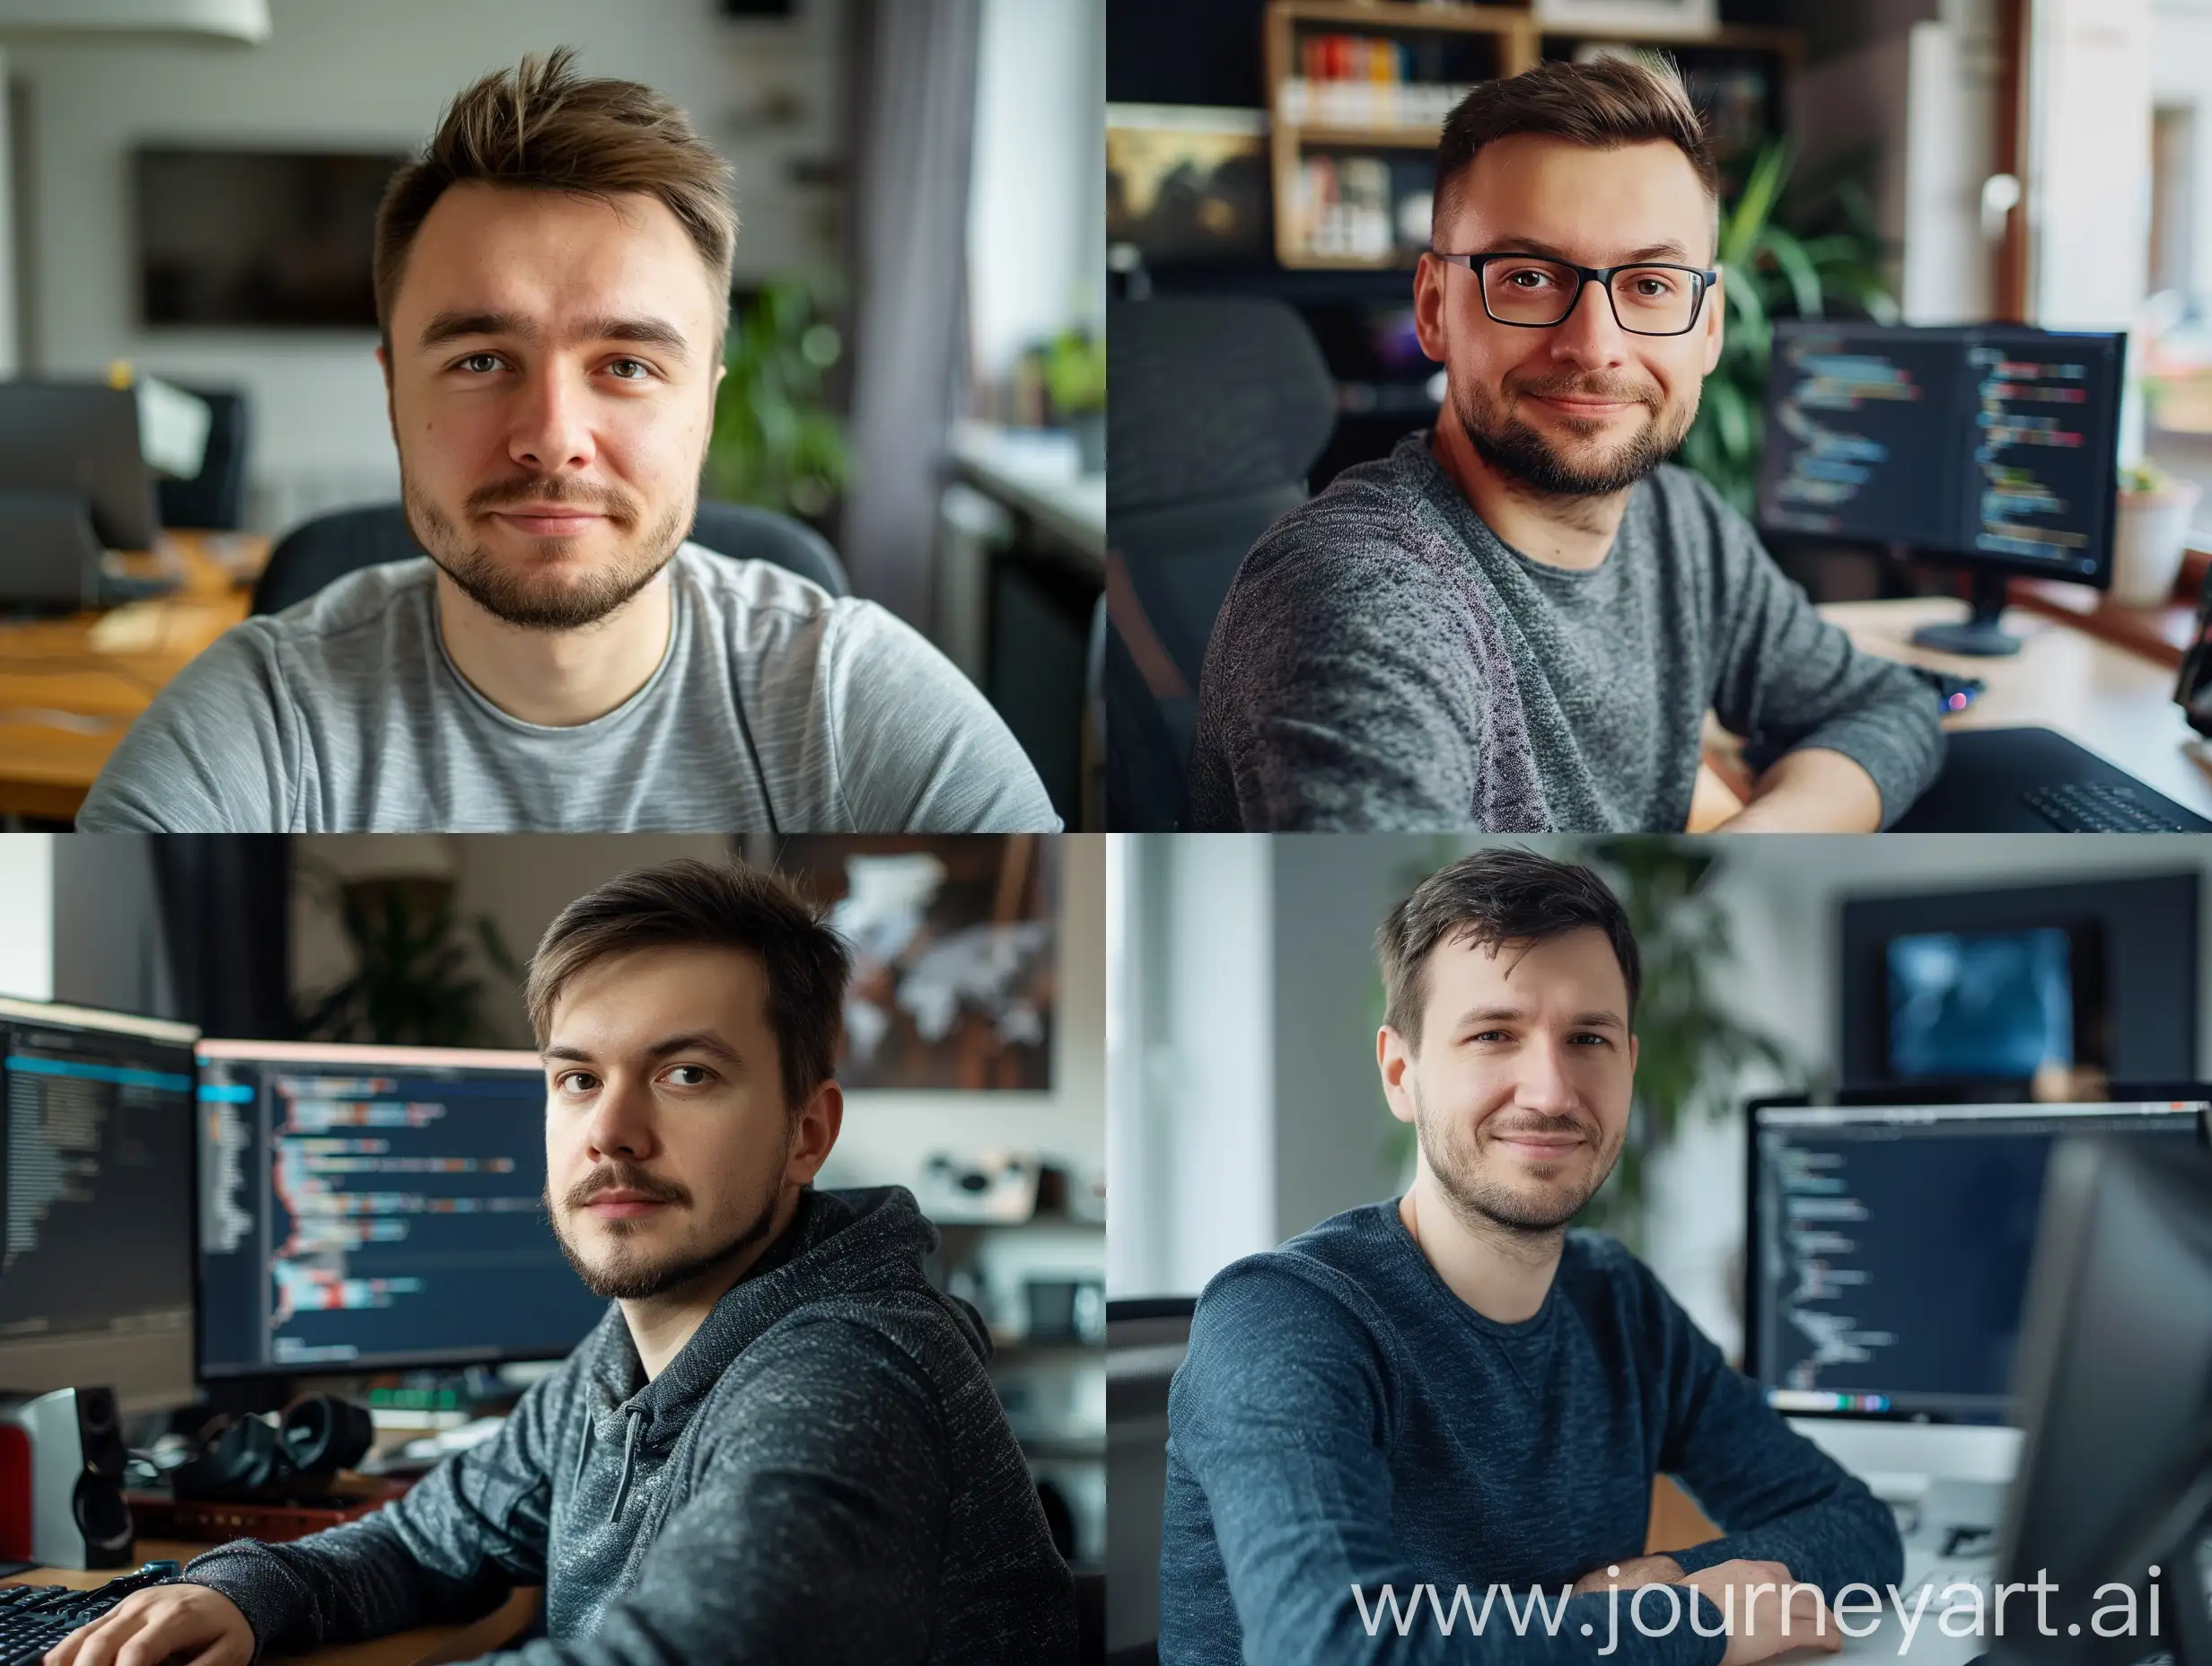 Polish-Male-FullStack-Developer-in-His-30s-Technology-Expert-Portrait